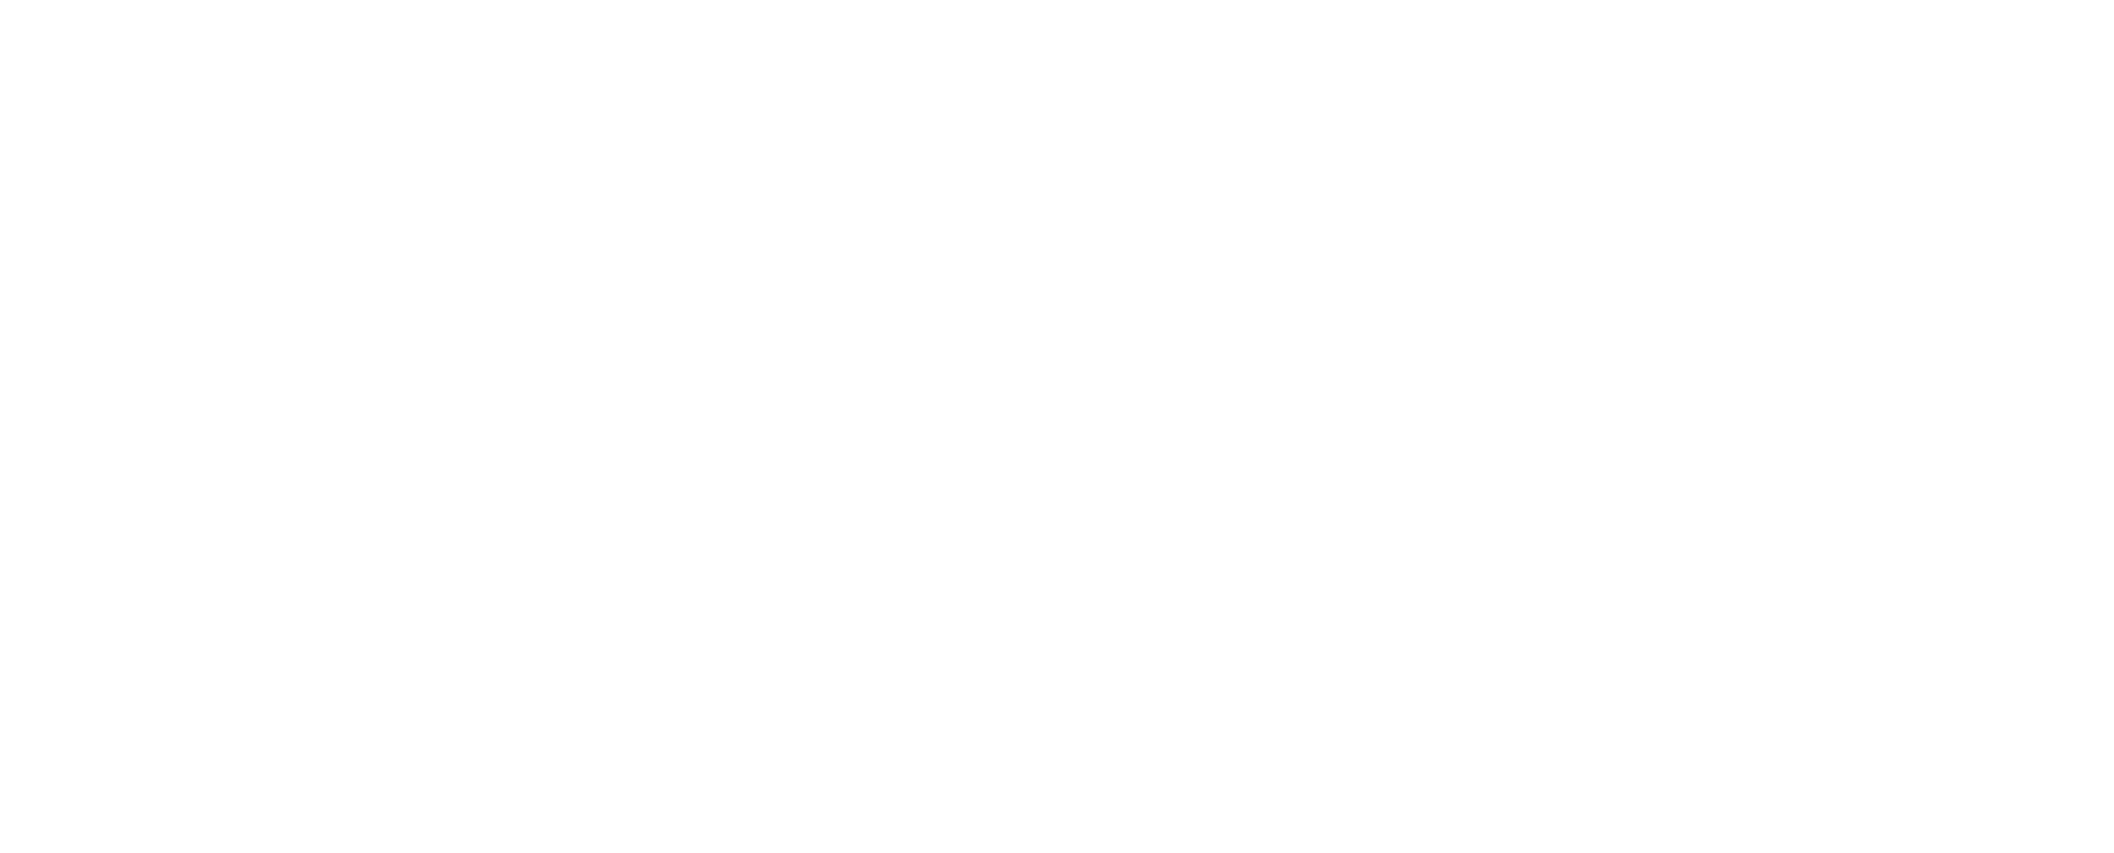 Carol's Pomona Valley Florist - Pomona, CA 91768 - (909)629-3203 | ShowMeLocal.com